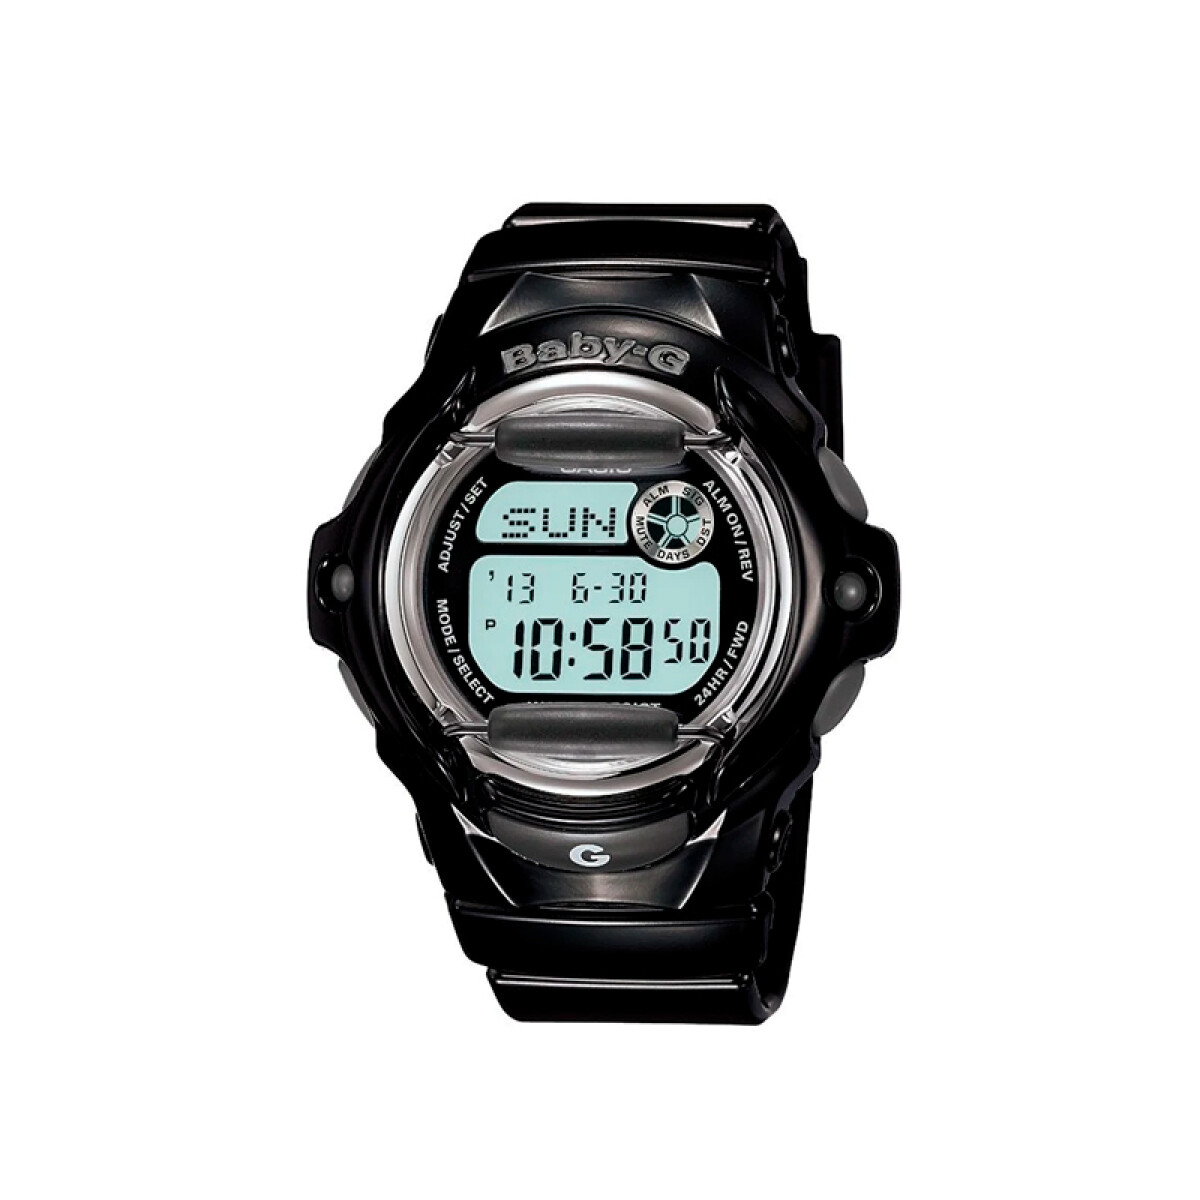 Reloj Baby-G Casio Digital Dama BG169R-1DR 